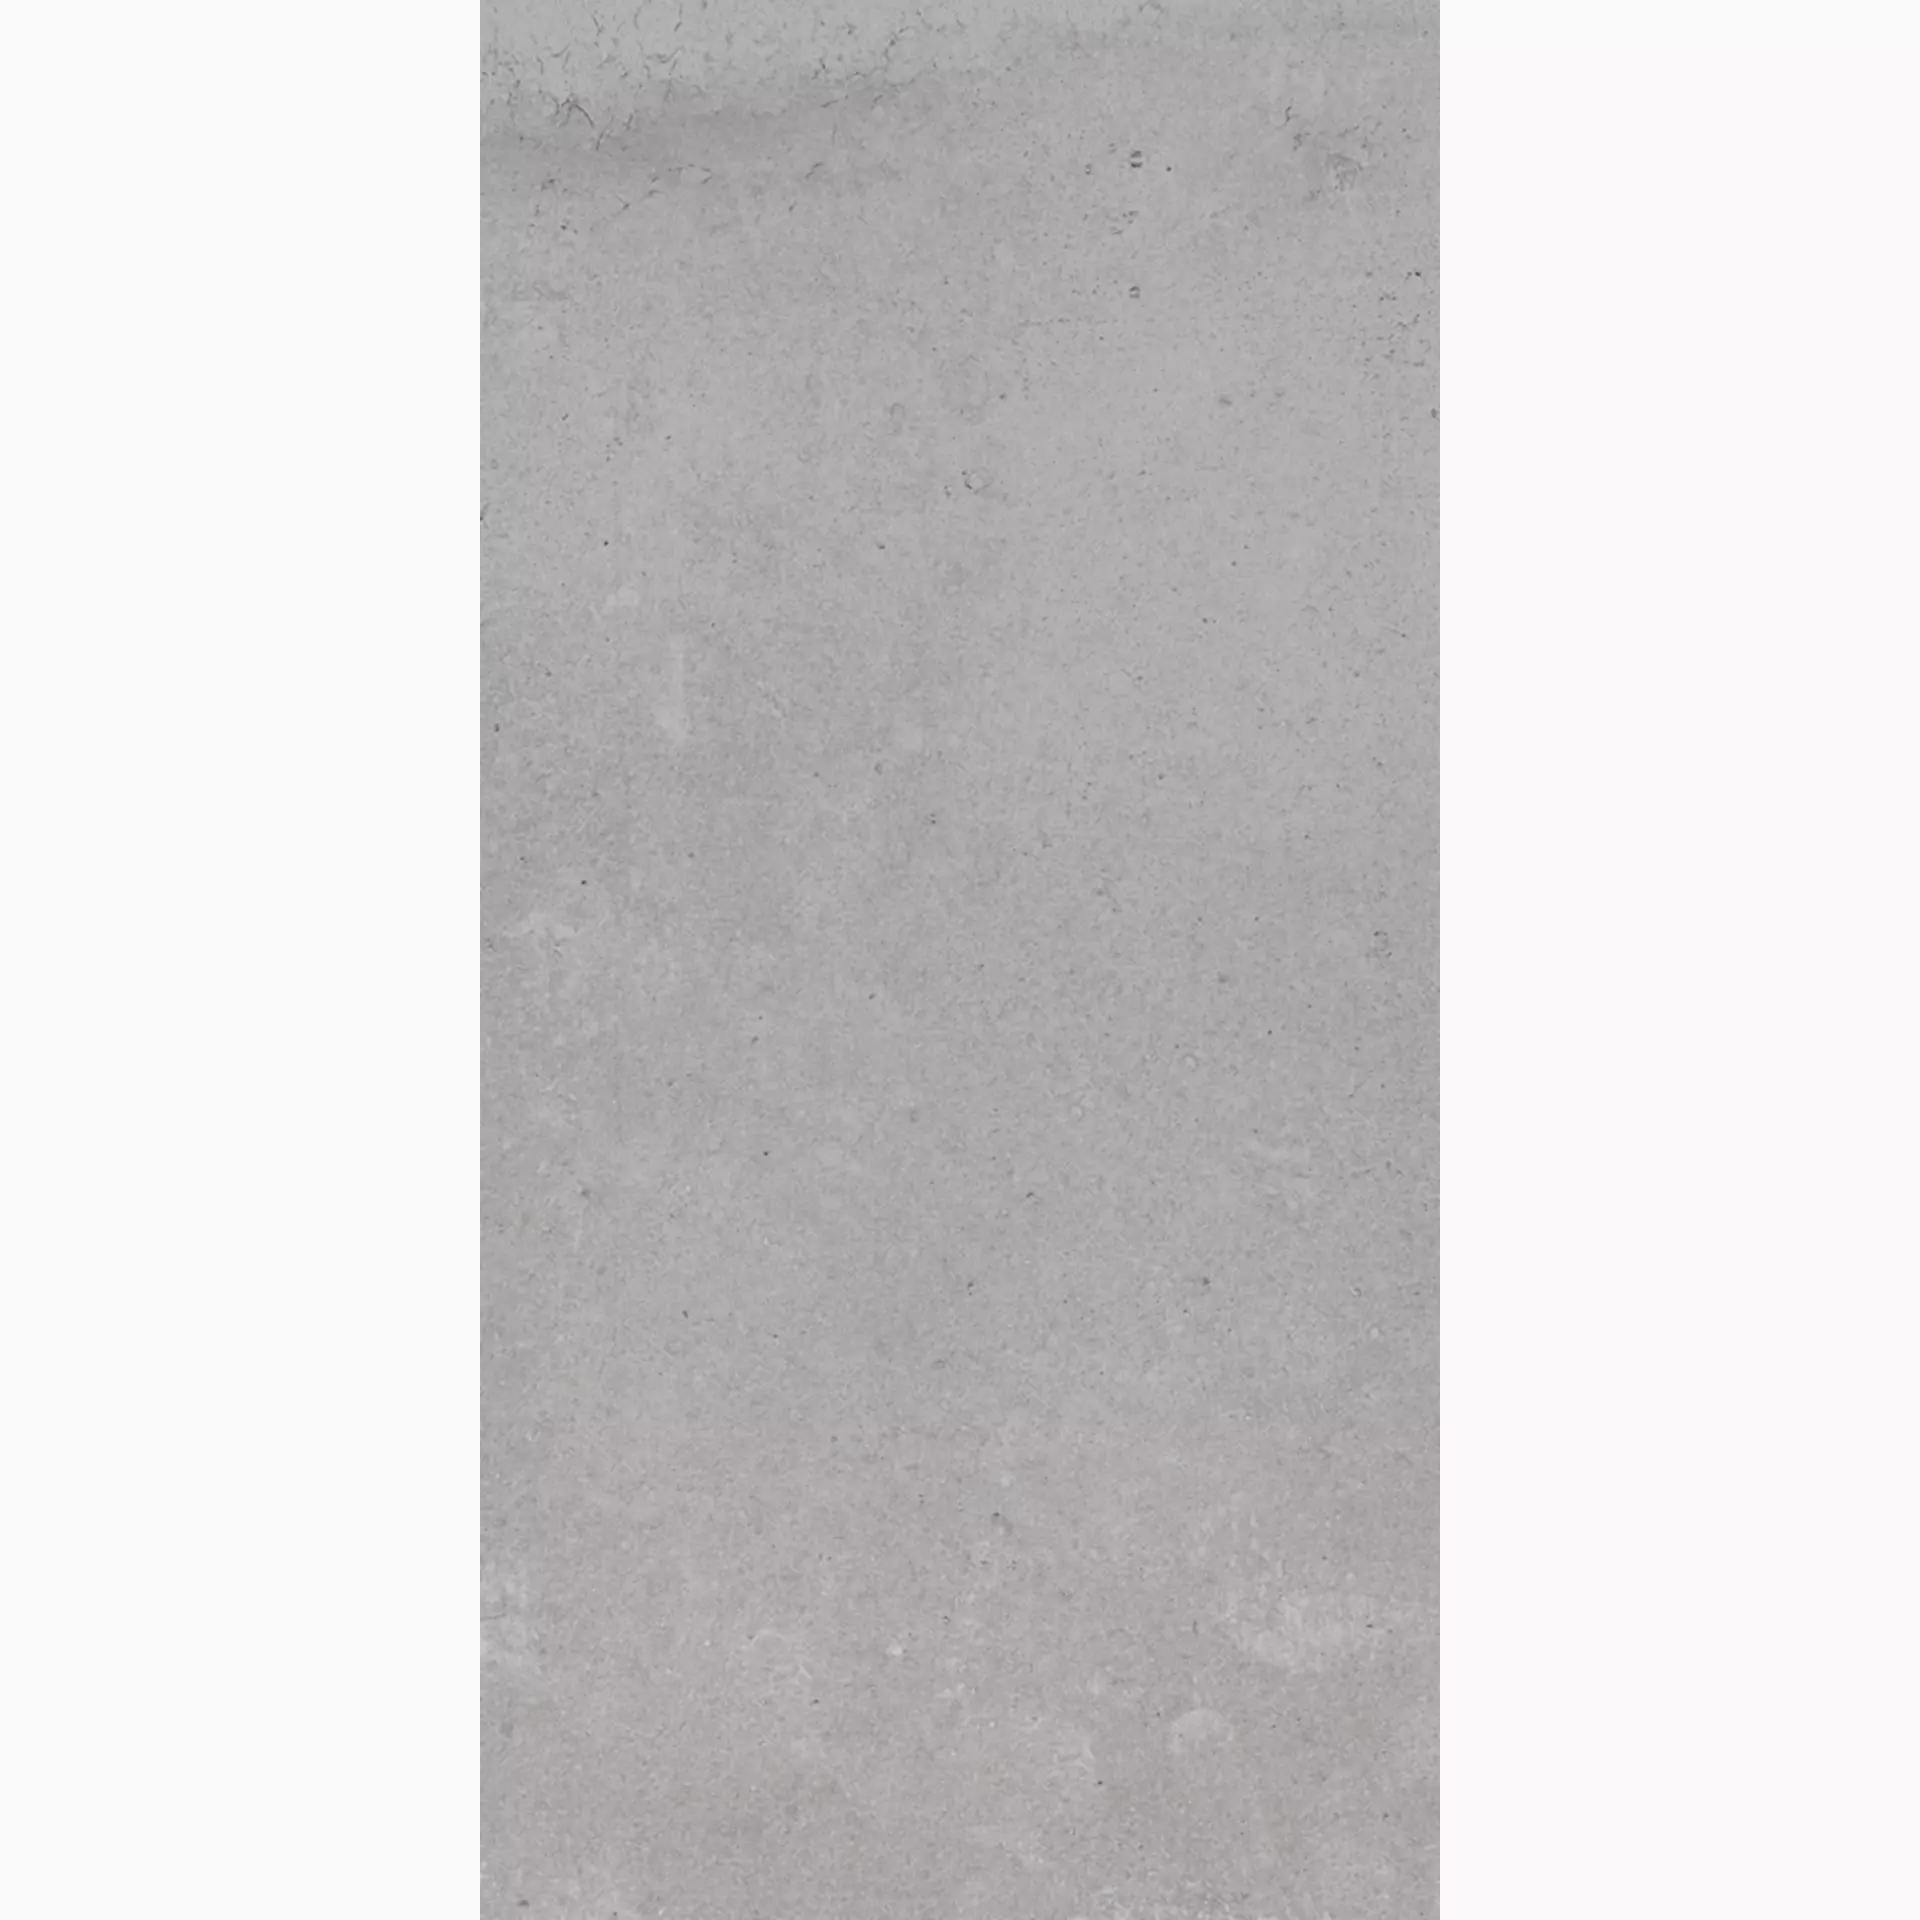 La Faenza Cottofaenza White Natural Slate Cut Matt 156166 30x60cm rectified 10mm - COTTOFAENZA36W